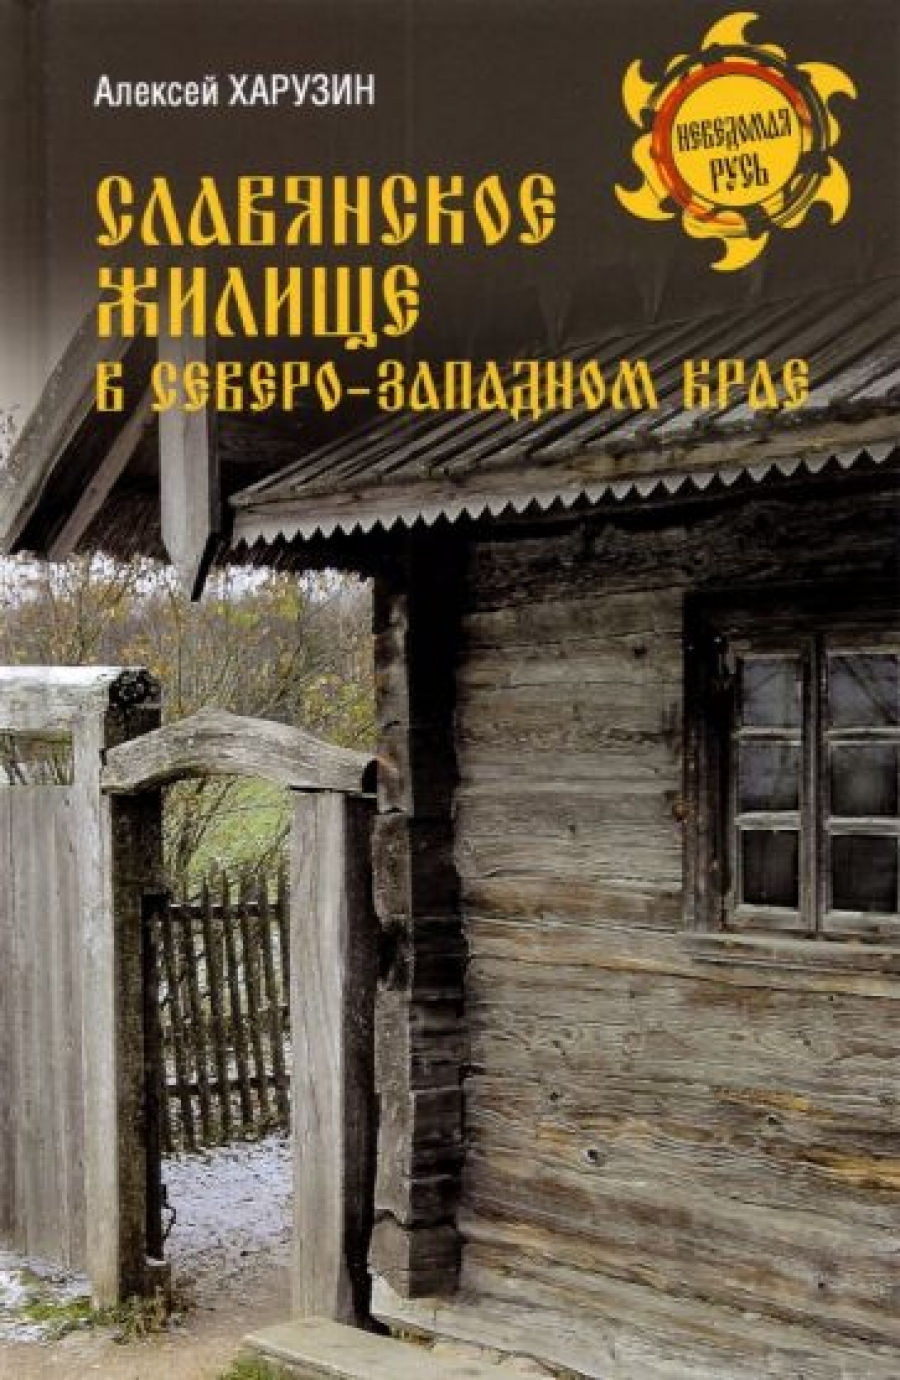 Харузин А.Н. - Славянское жилище в Северо-Западном крае 